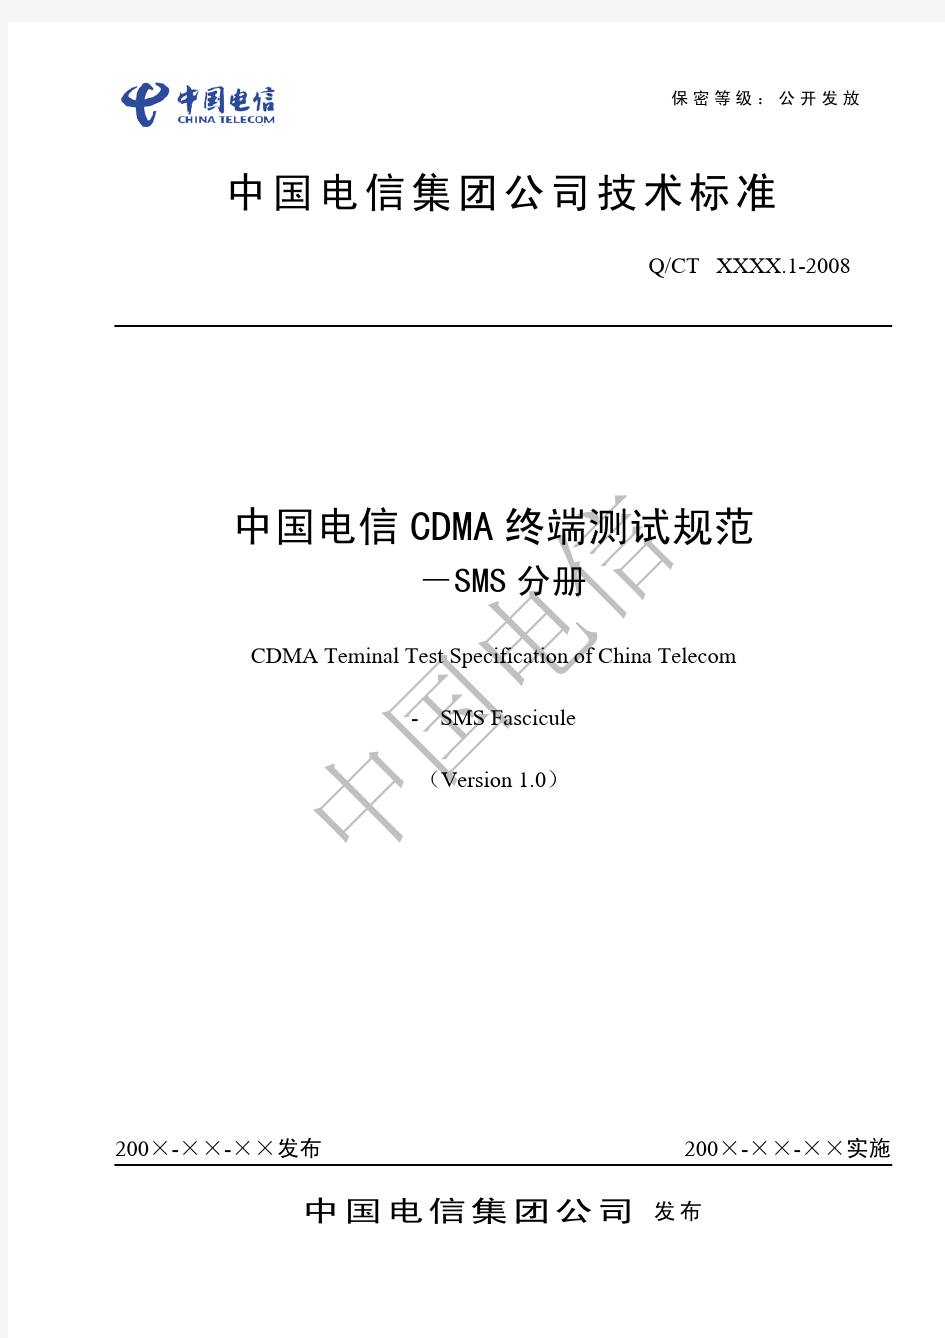 中国电信CDMA终端测试规范-SMS分册-V1.0